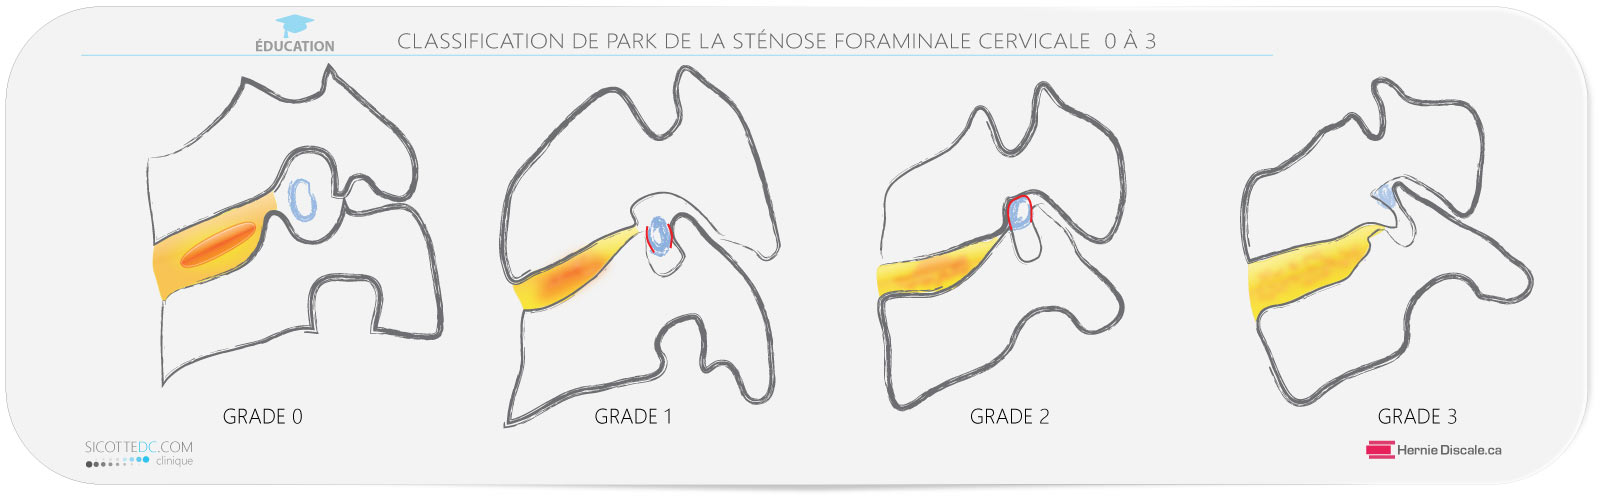 La classification de Park de la sténose foraminale cervicale. IRM